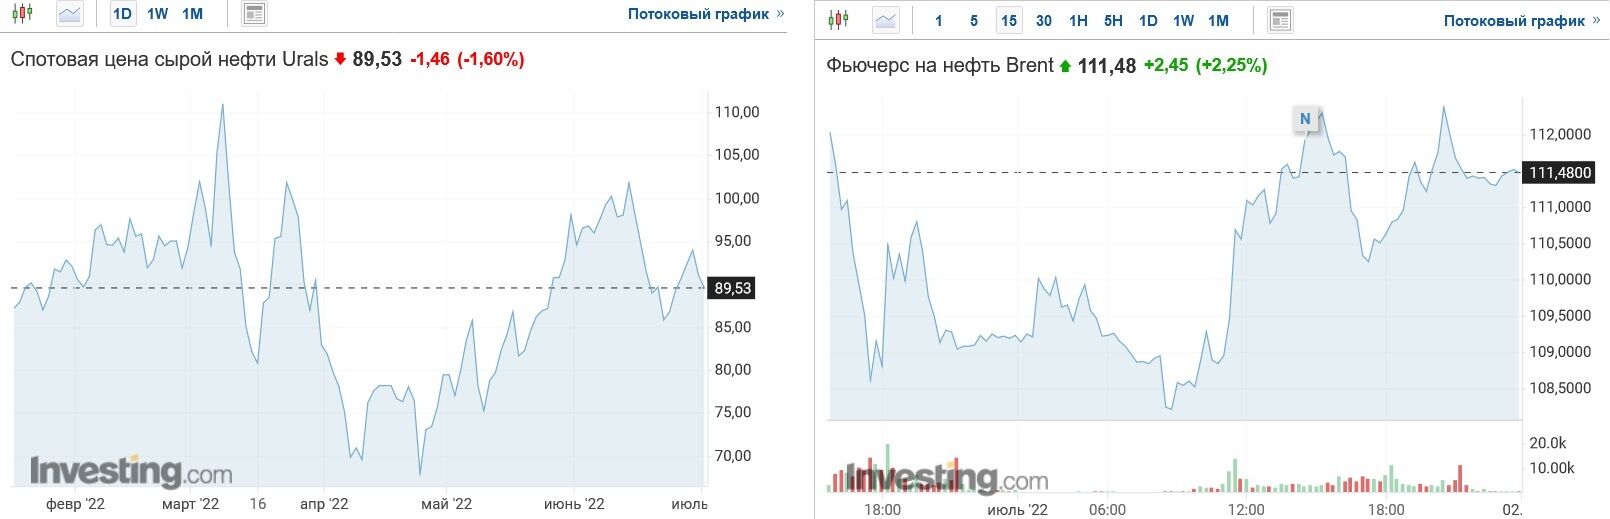 Сколько стоят российская нефть марки Urals и европейская Brent